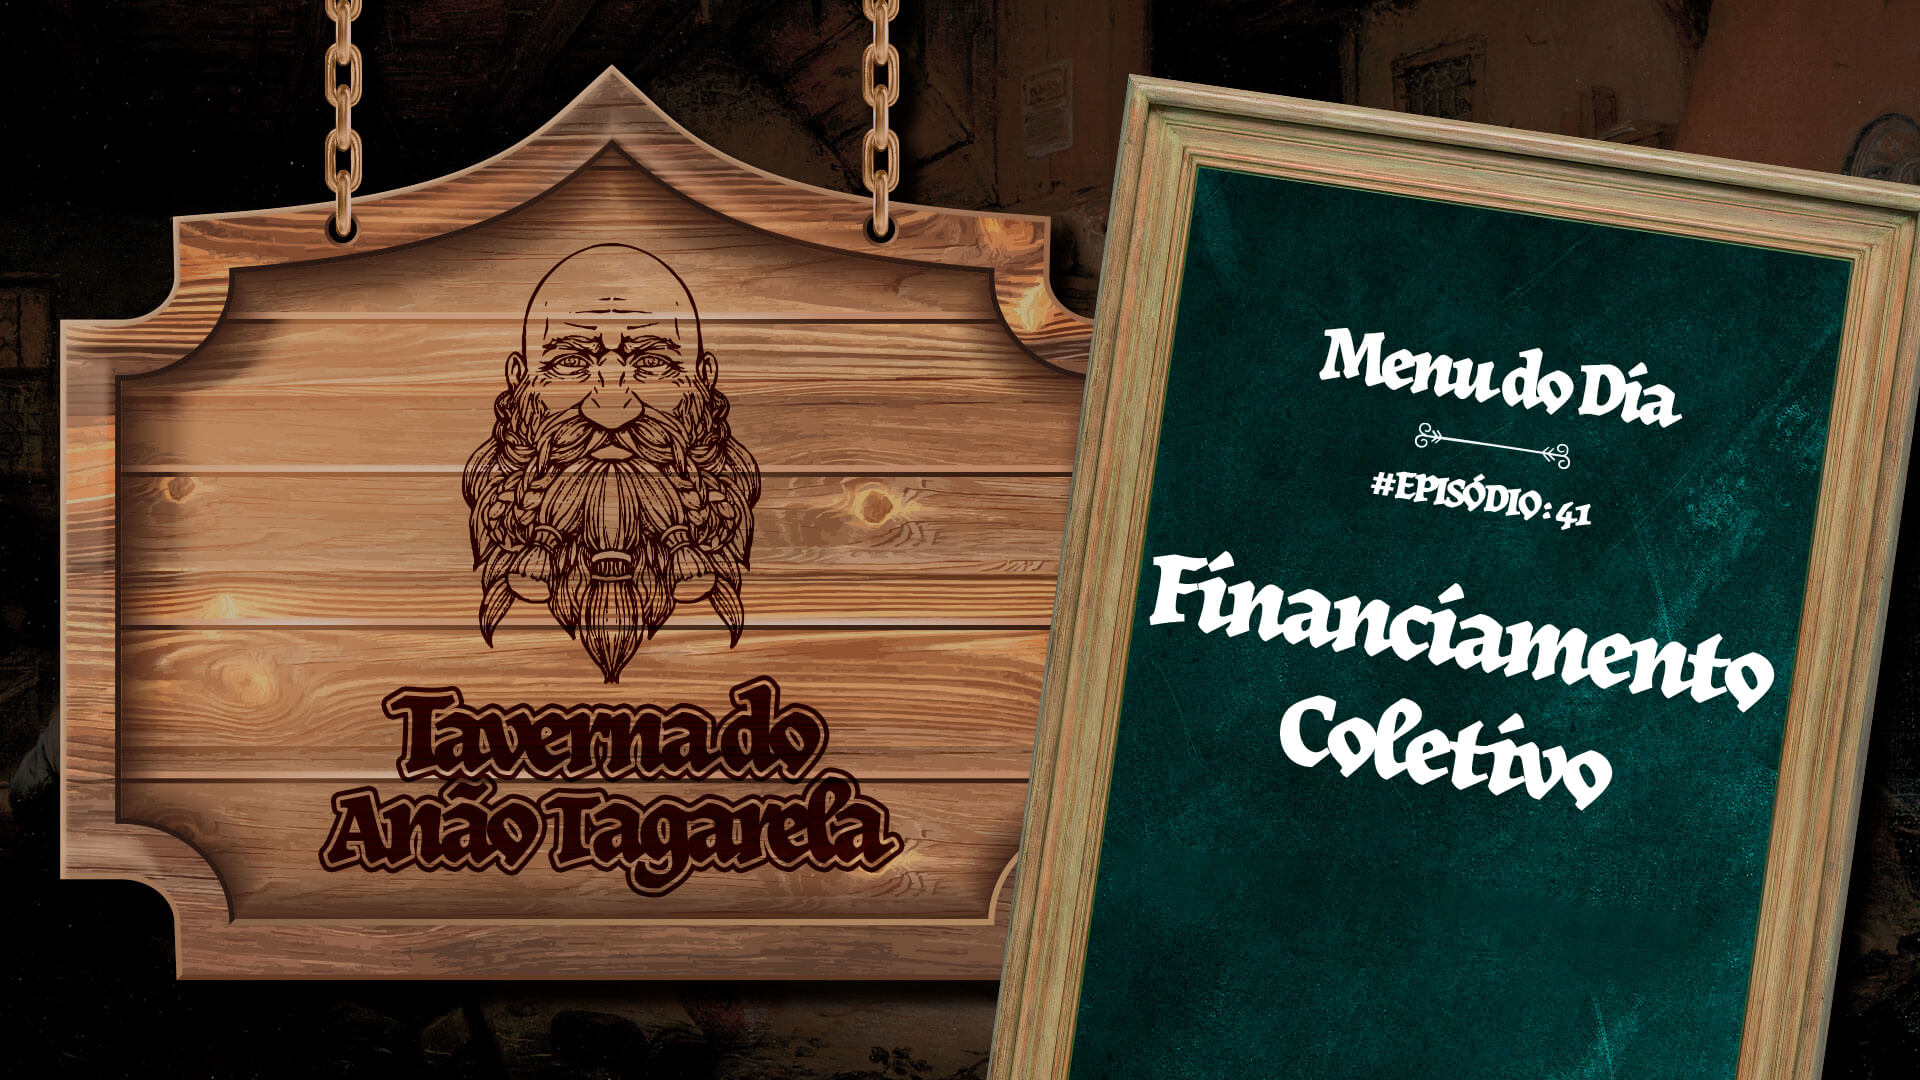 Financiamento Coletivo - Taverna do Anão Tagarela #41